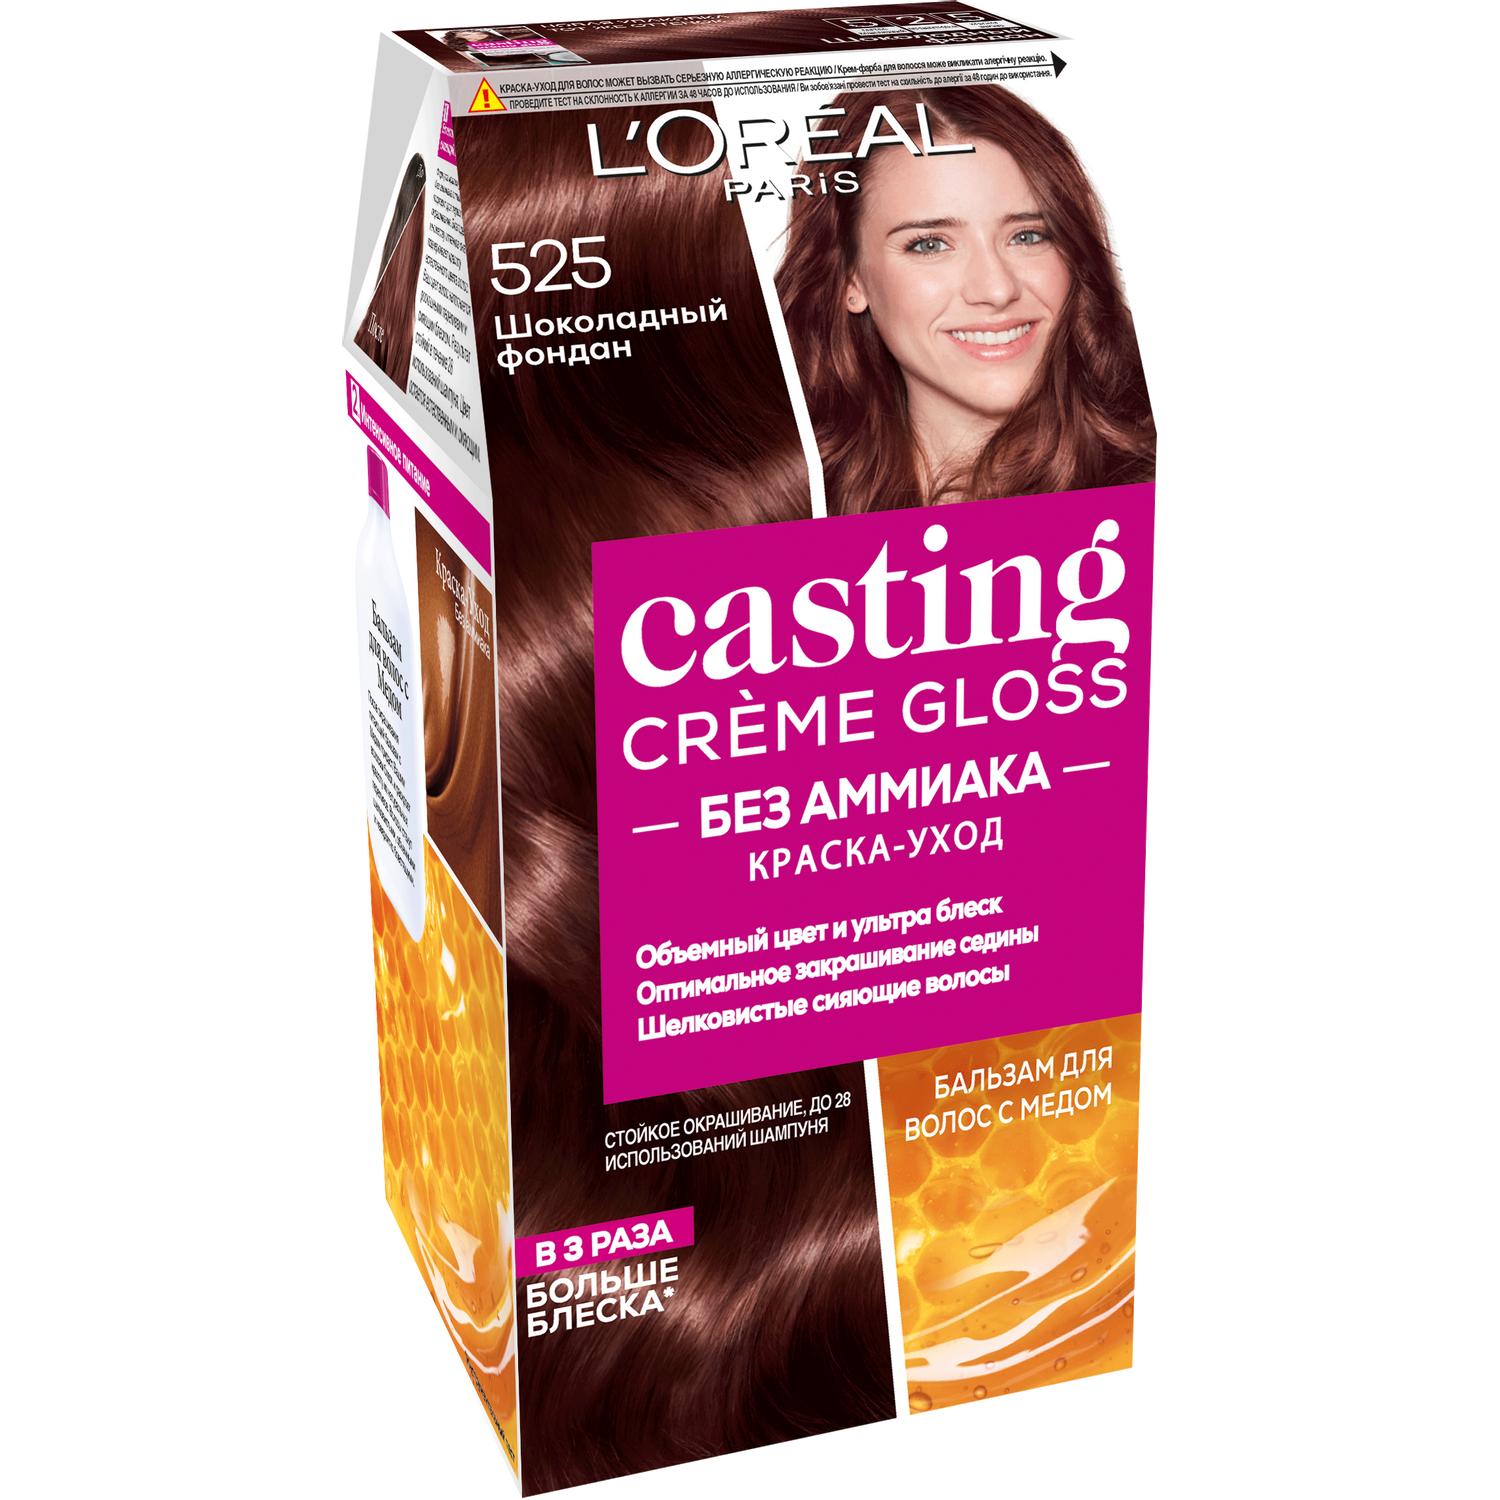 Краска для волос L'Oreal Paris Casting Creme Gloss 525 Шоколадный фондан маска для волос l oreal paris elseve полное восстановление 5 300 мл